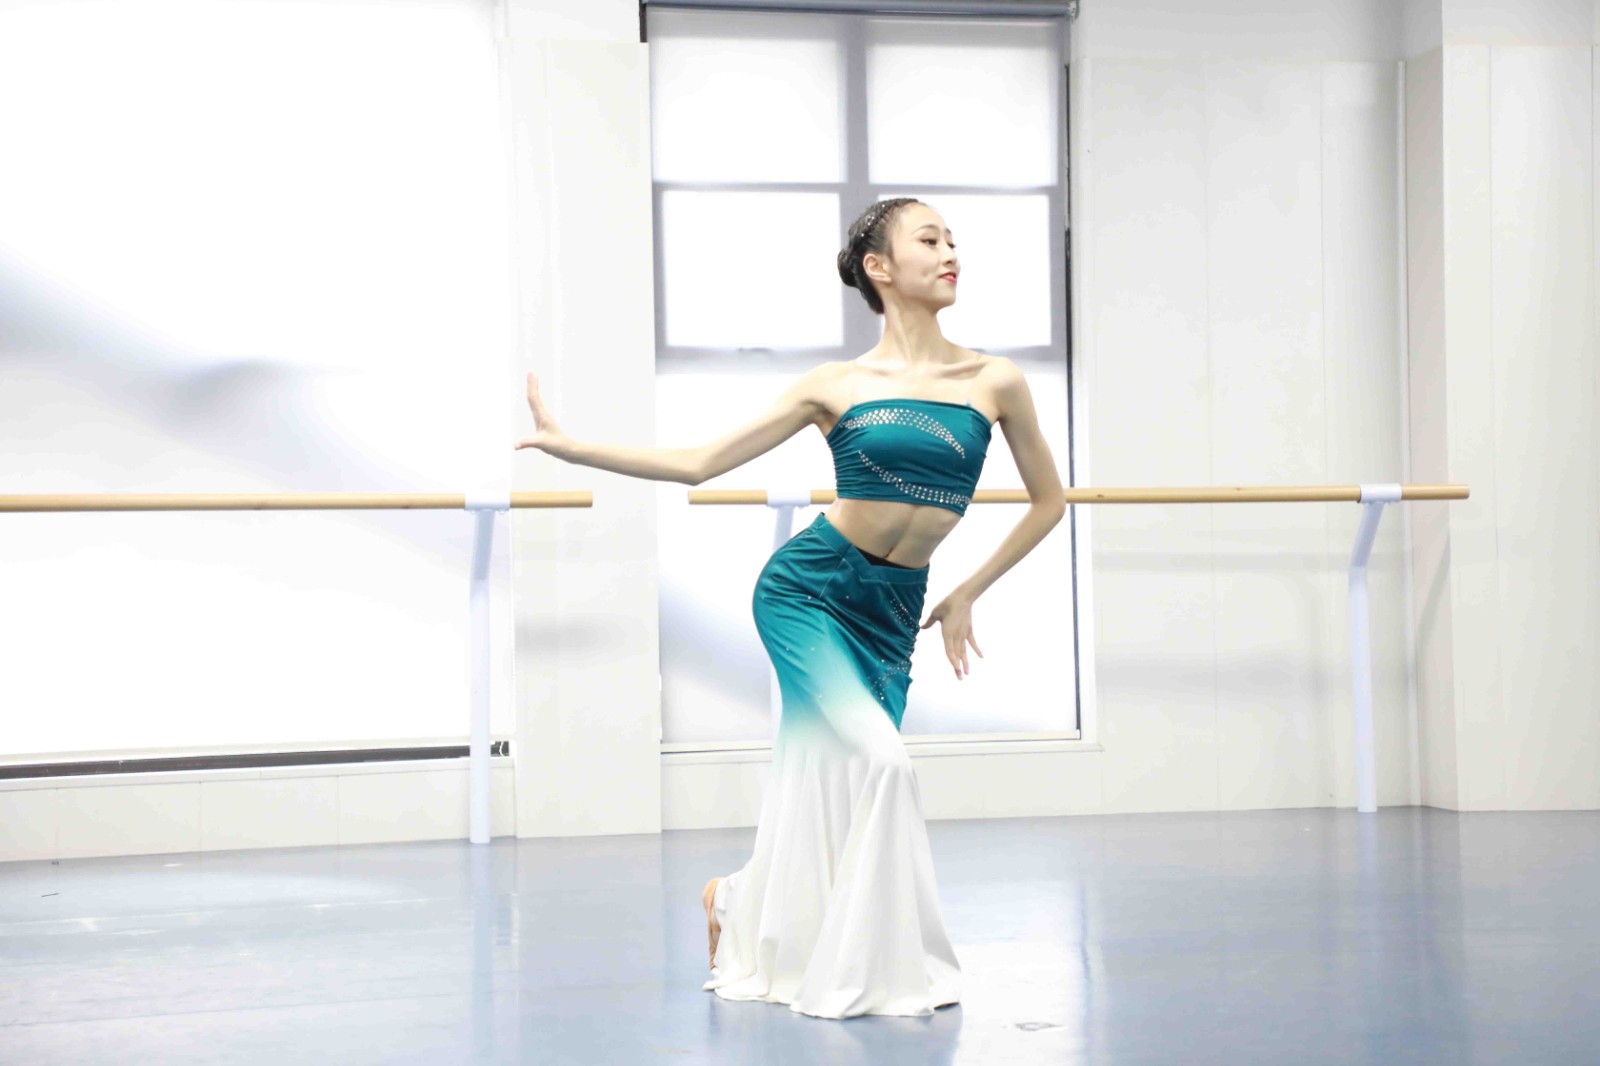 安徽銅陵藝考舞蹈機構舞蹈集訓會產生哪些費用 銅陵藝考集訓一般什么時候開始?